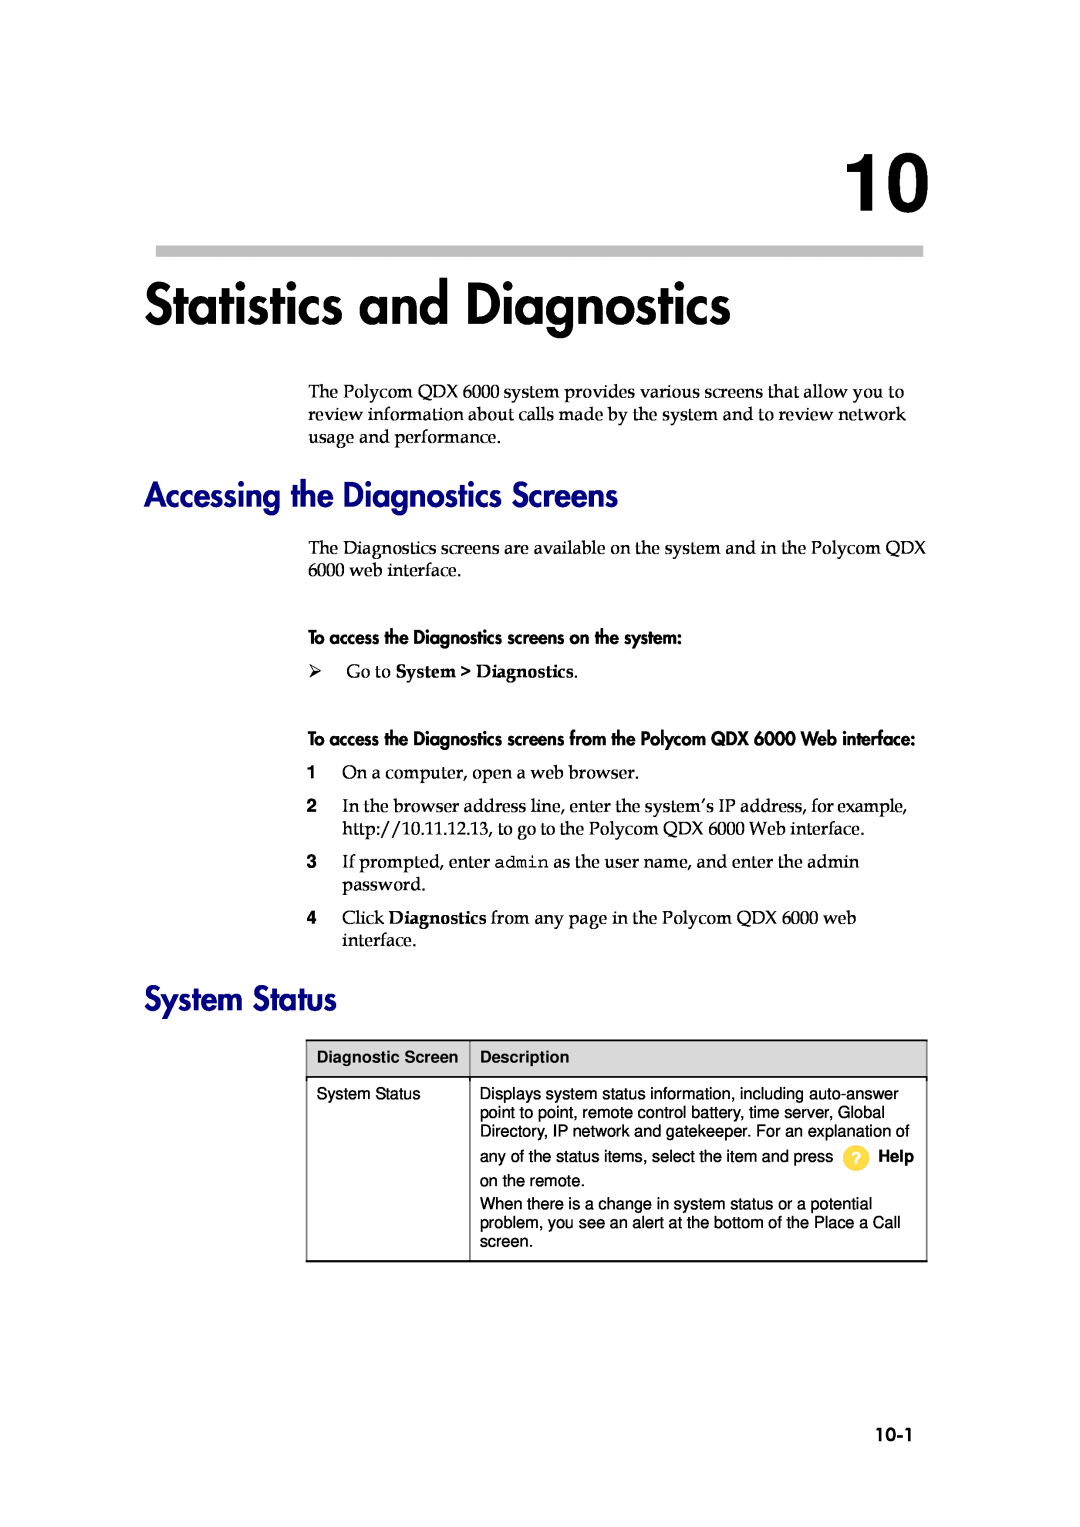 Polycom 6000 Statistics and Diagnostics, Accessing the Diagnostics Screens, System Status,  Go to System Diagnostics 